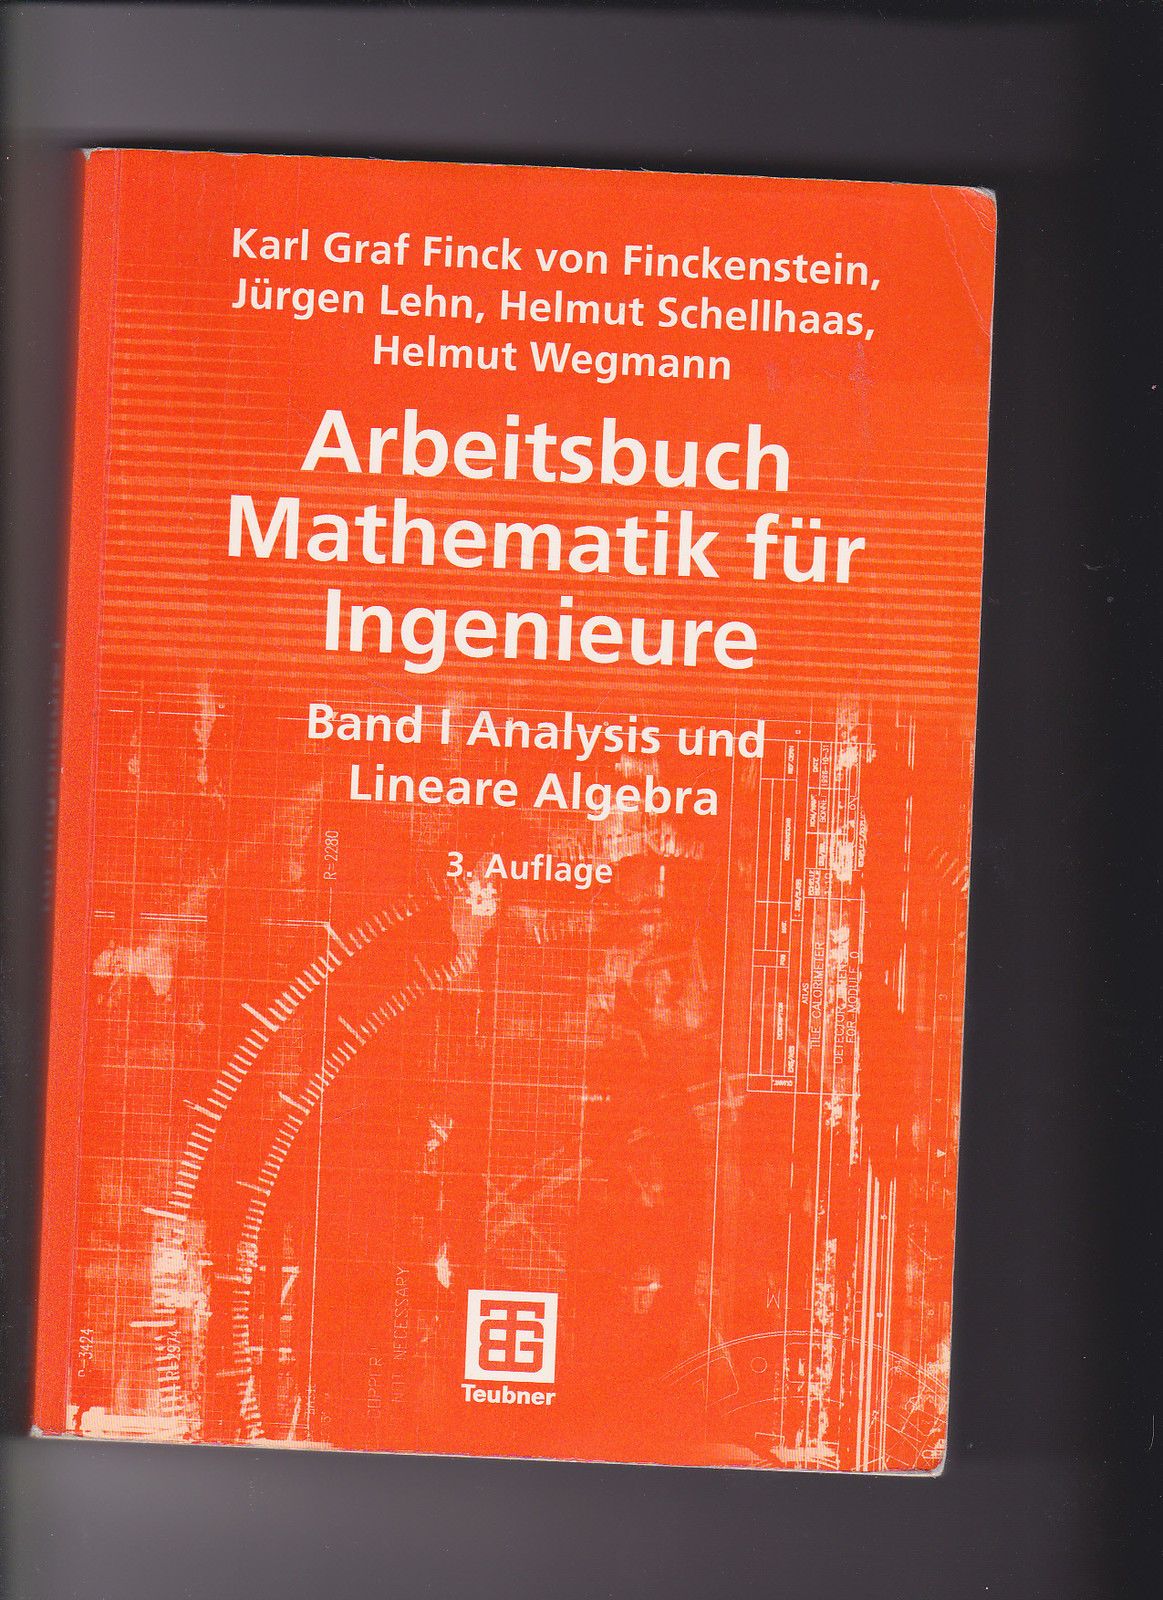 Finckenstein, Arbeitsbuch Mathematik für Ingenieure I  1  Analysis - Fachbuch - Finck von Finckenstein, Karl, Jürgen Lehn und Helmut Schellhaas